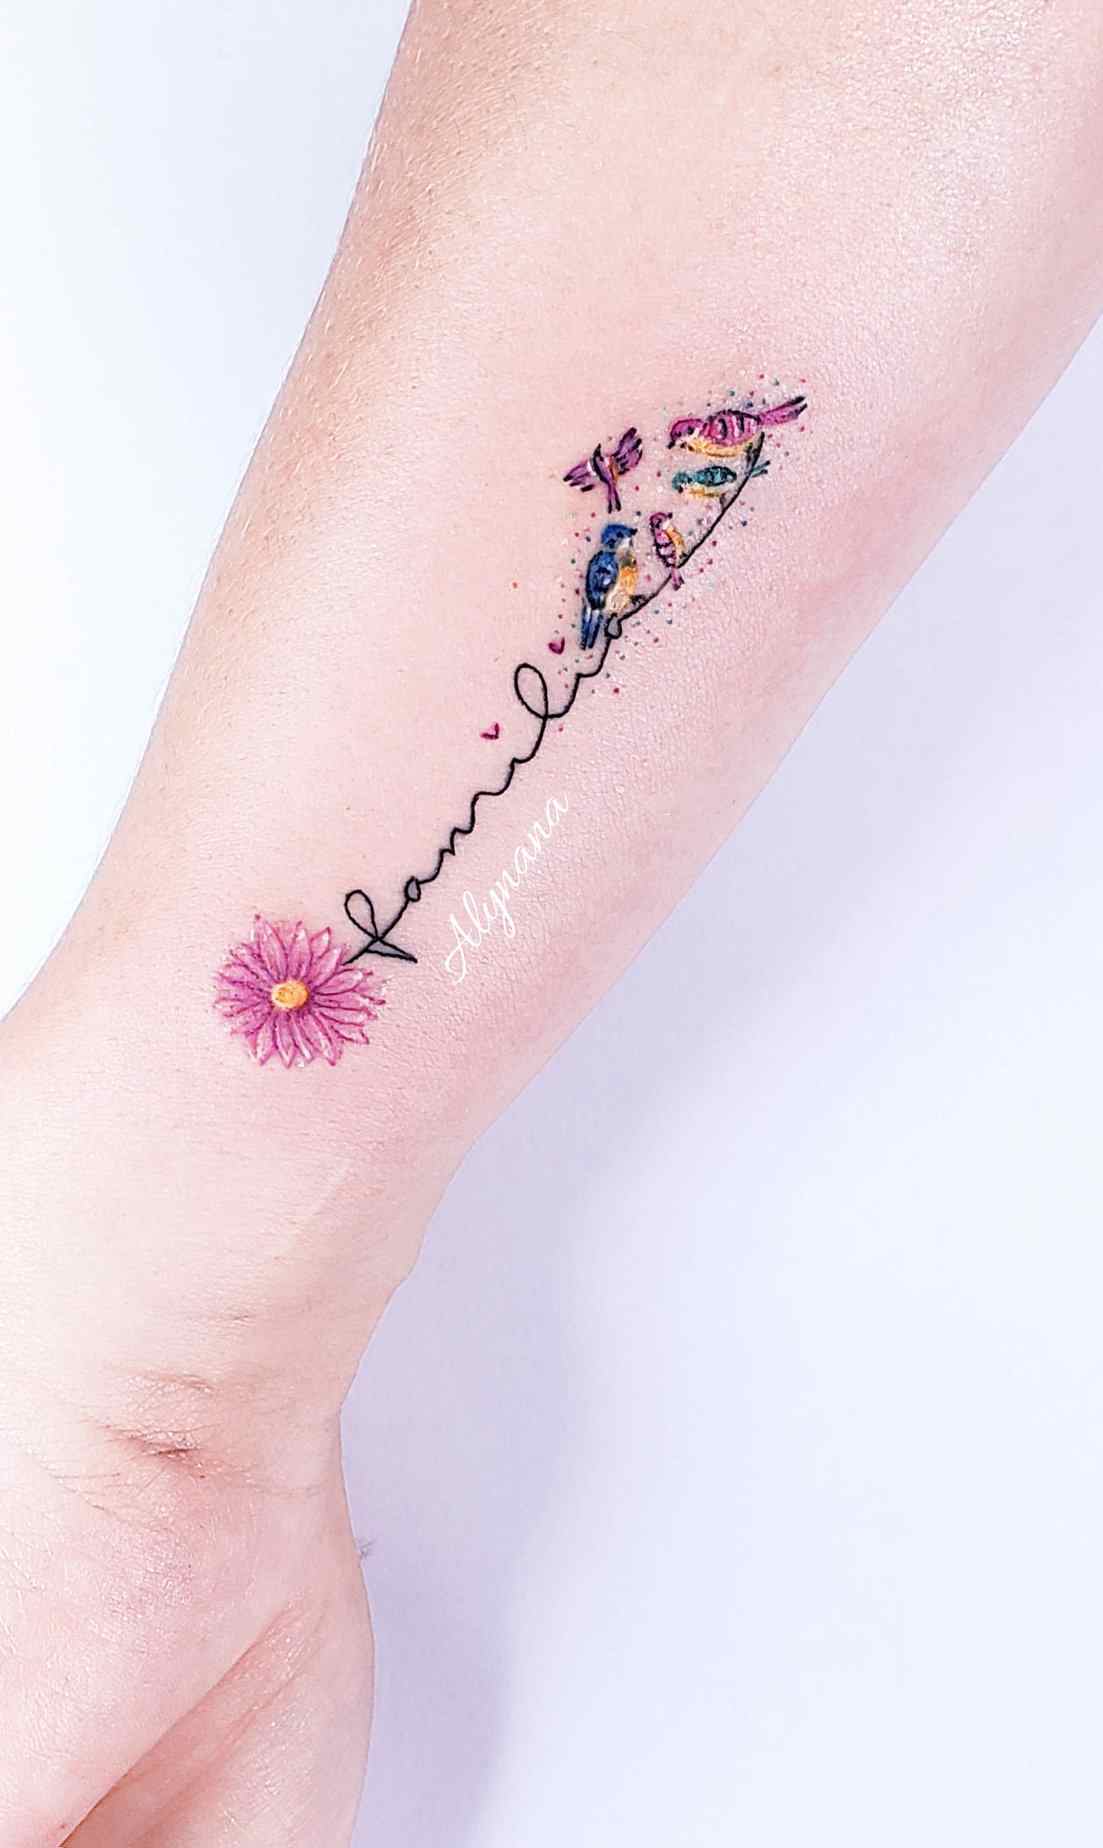 100 Tatuagens Coloridas Delicadas Artista Alynana Família representada com pássaros no antebraço com flores